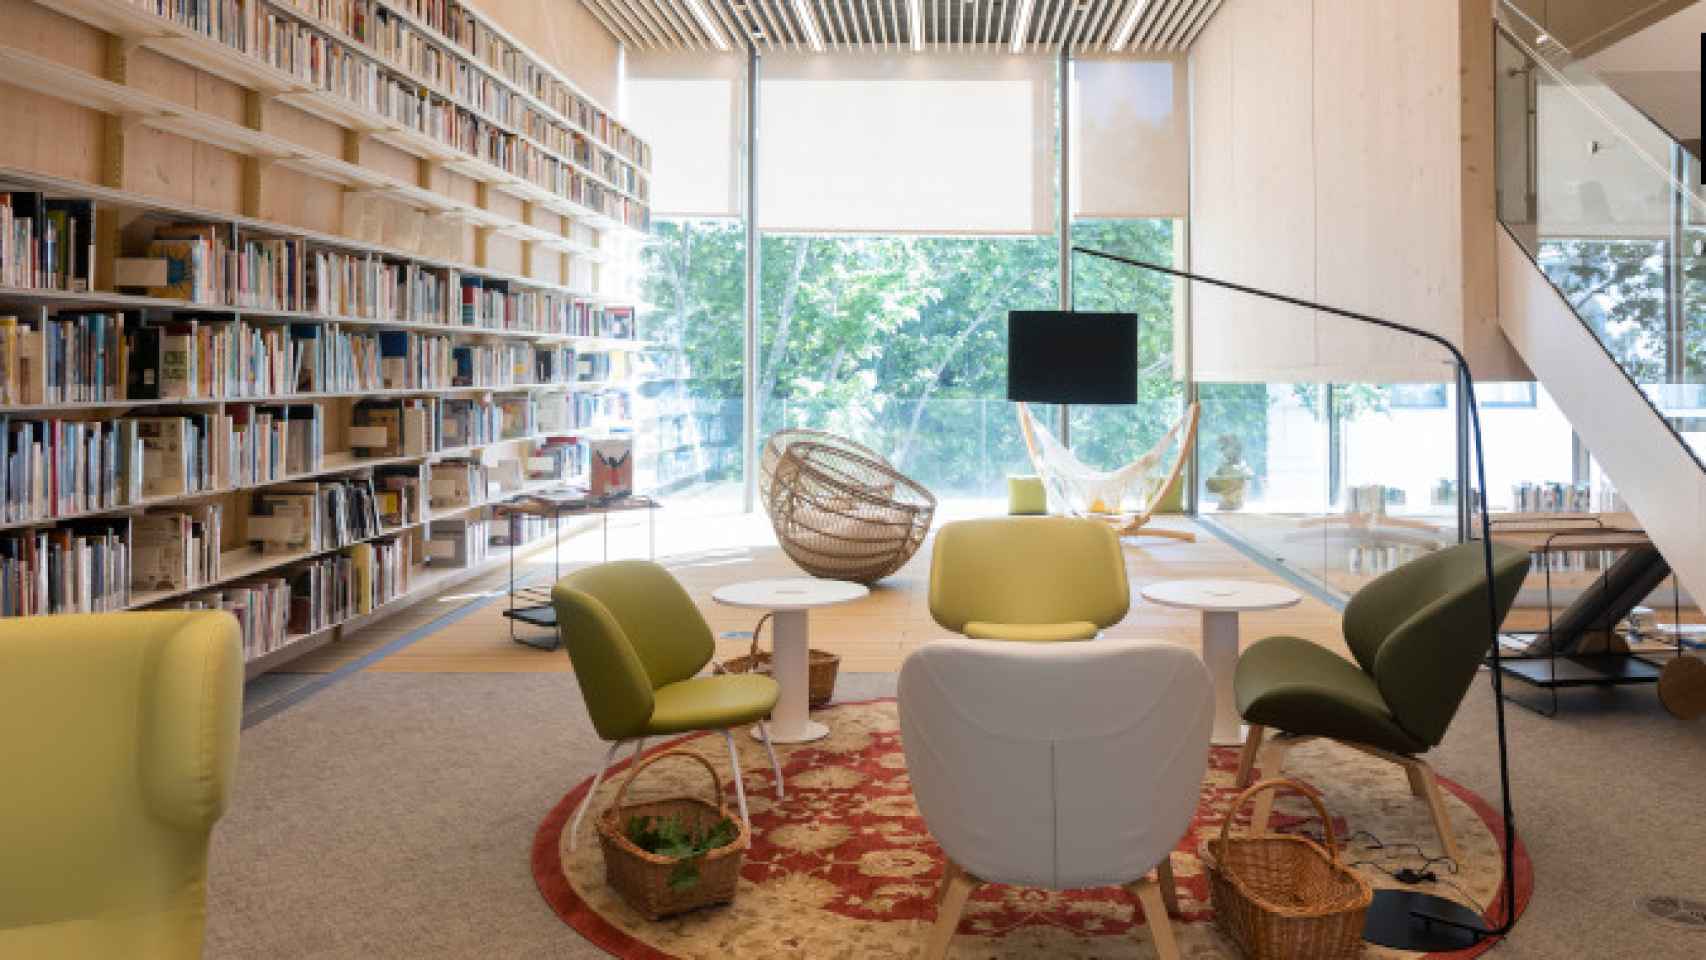 Imagen de la biblioteca Gabriel García Márquez en su interior